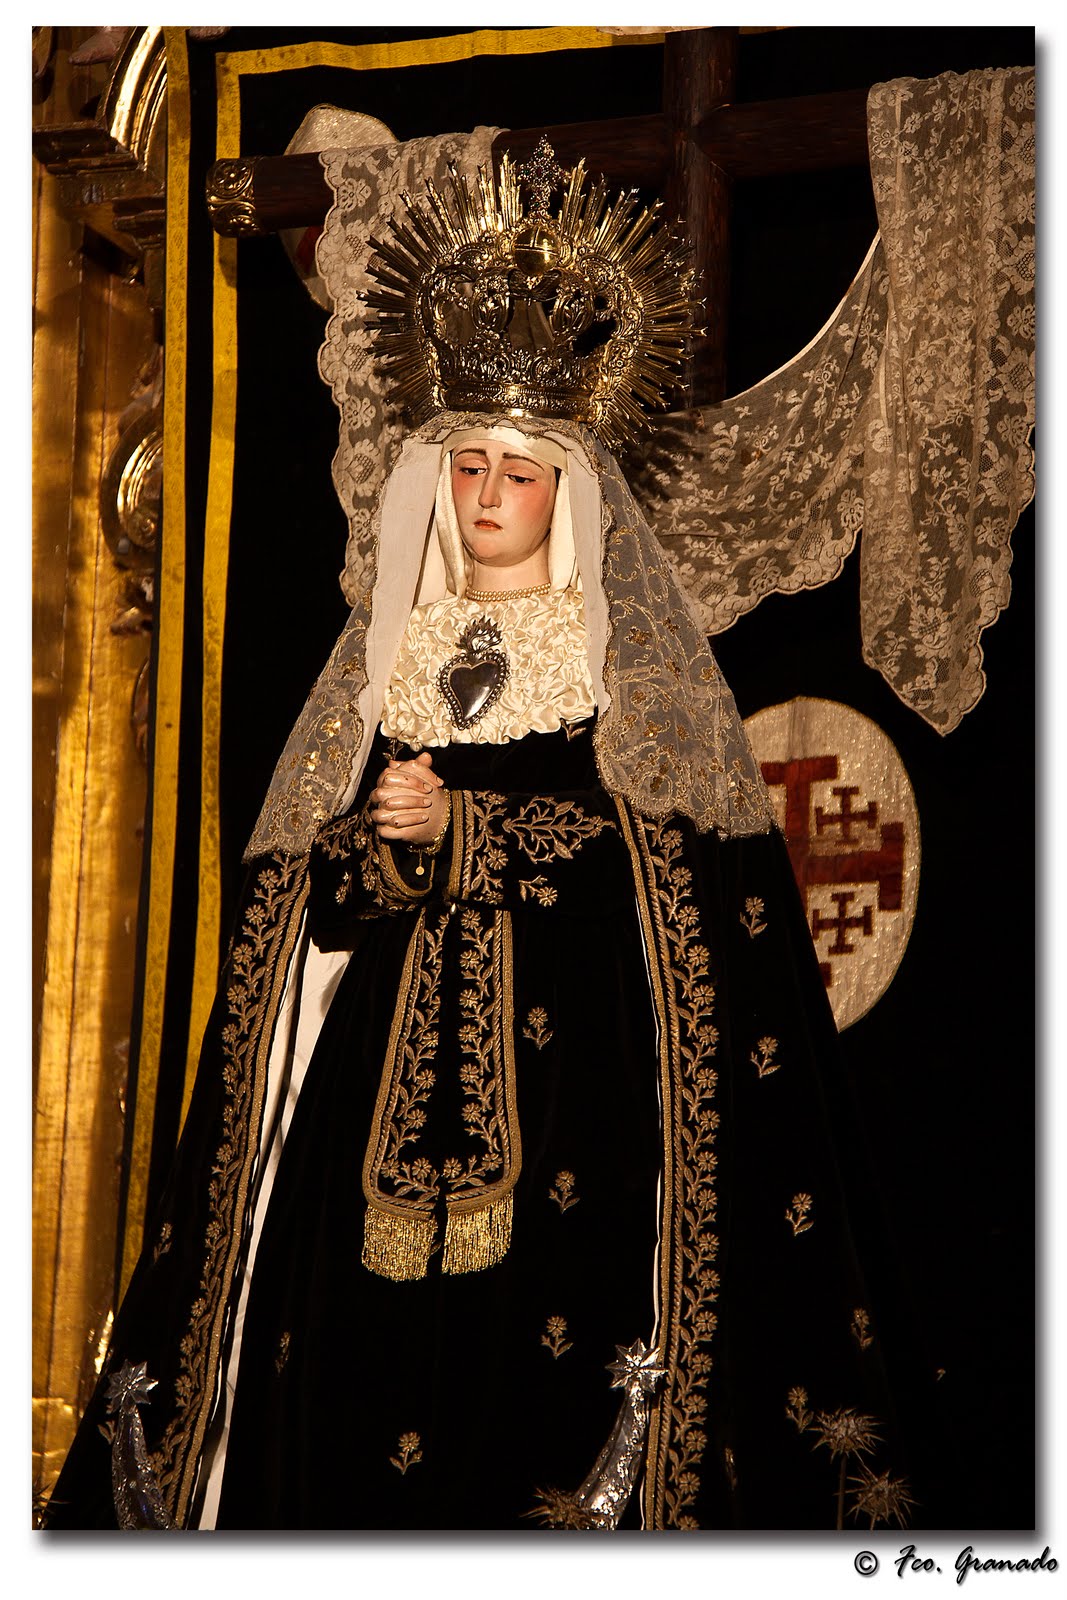 http://franciscogranadopatero35.blogspot.com.es/2011/03/altar-stabat-mater-hermandad-del-santo.html